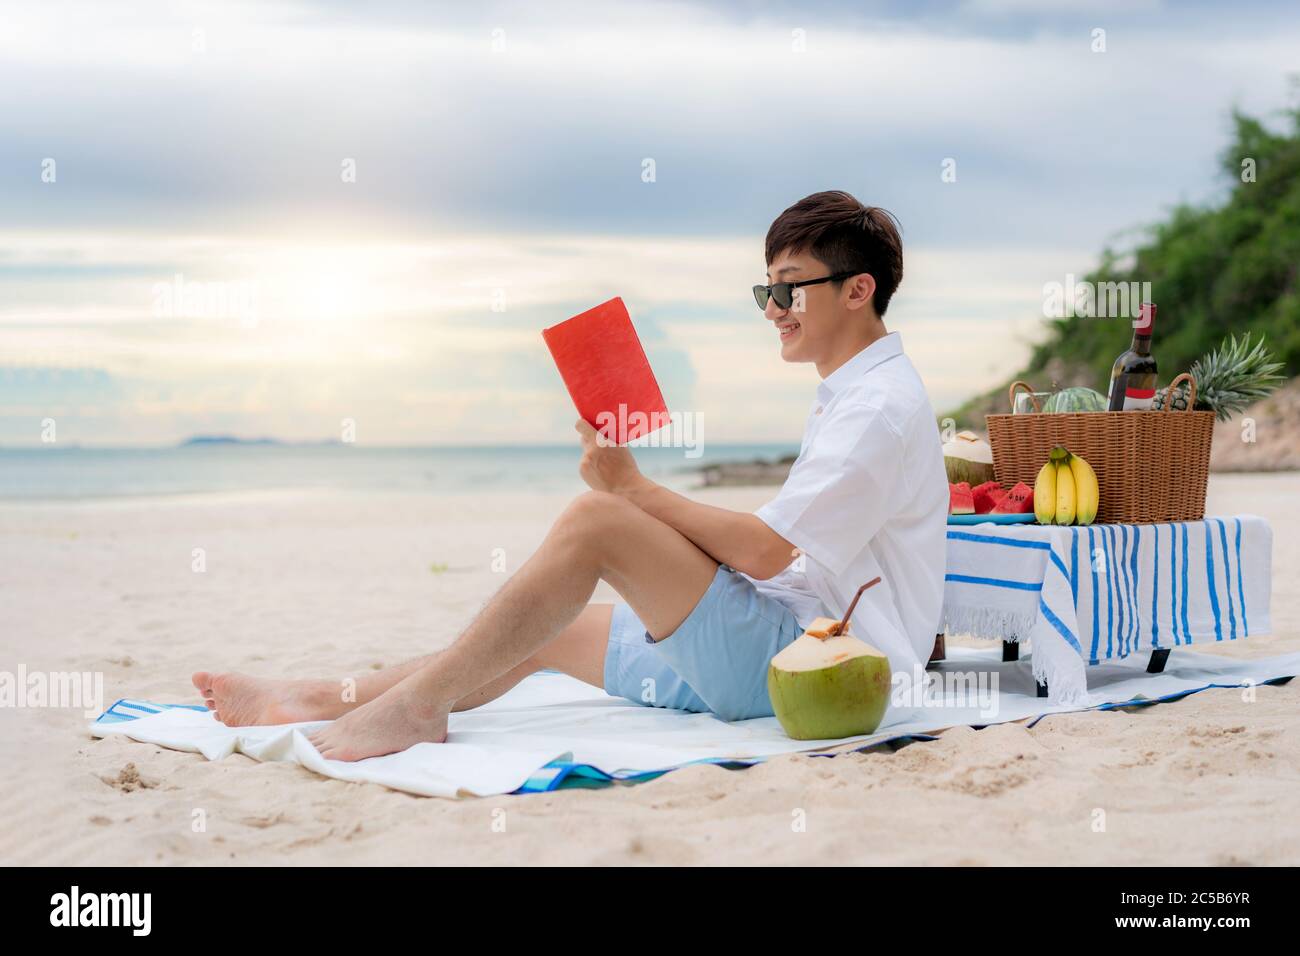 Junge asiatische Mann tragen Sonnenbrille ist mit einem Buch im weißen Sandstrand und in der Nähe des Meeres mit tropischen Früchten im Hintergrund entspannen. Sommer, Urlaub Stockfoto